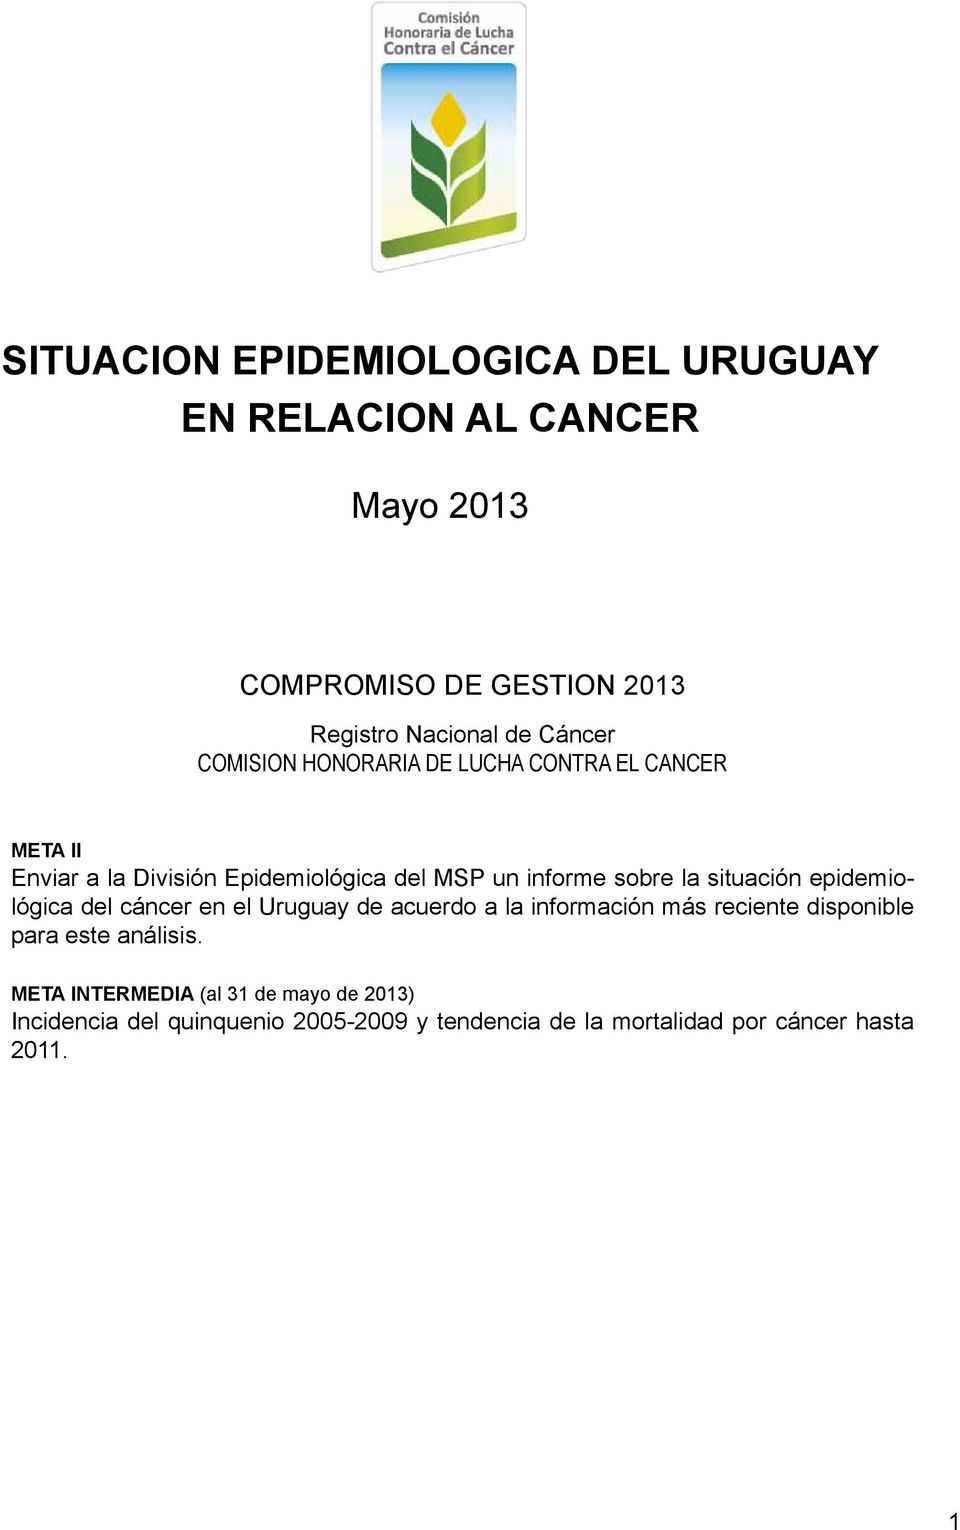 la situación epidemiológica del cáncer en el Uruguay de acuerdo a la información más reciente disponible para este